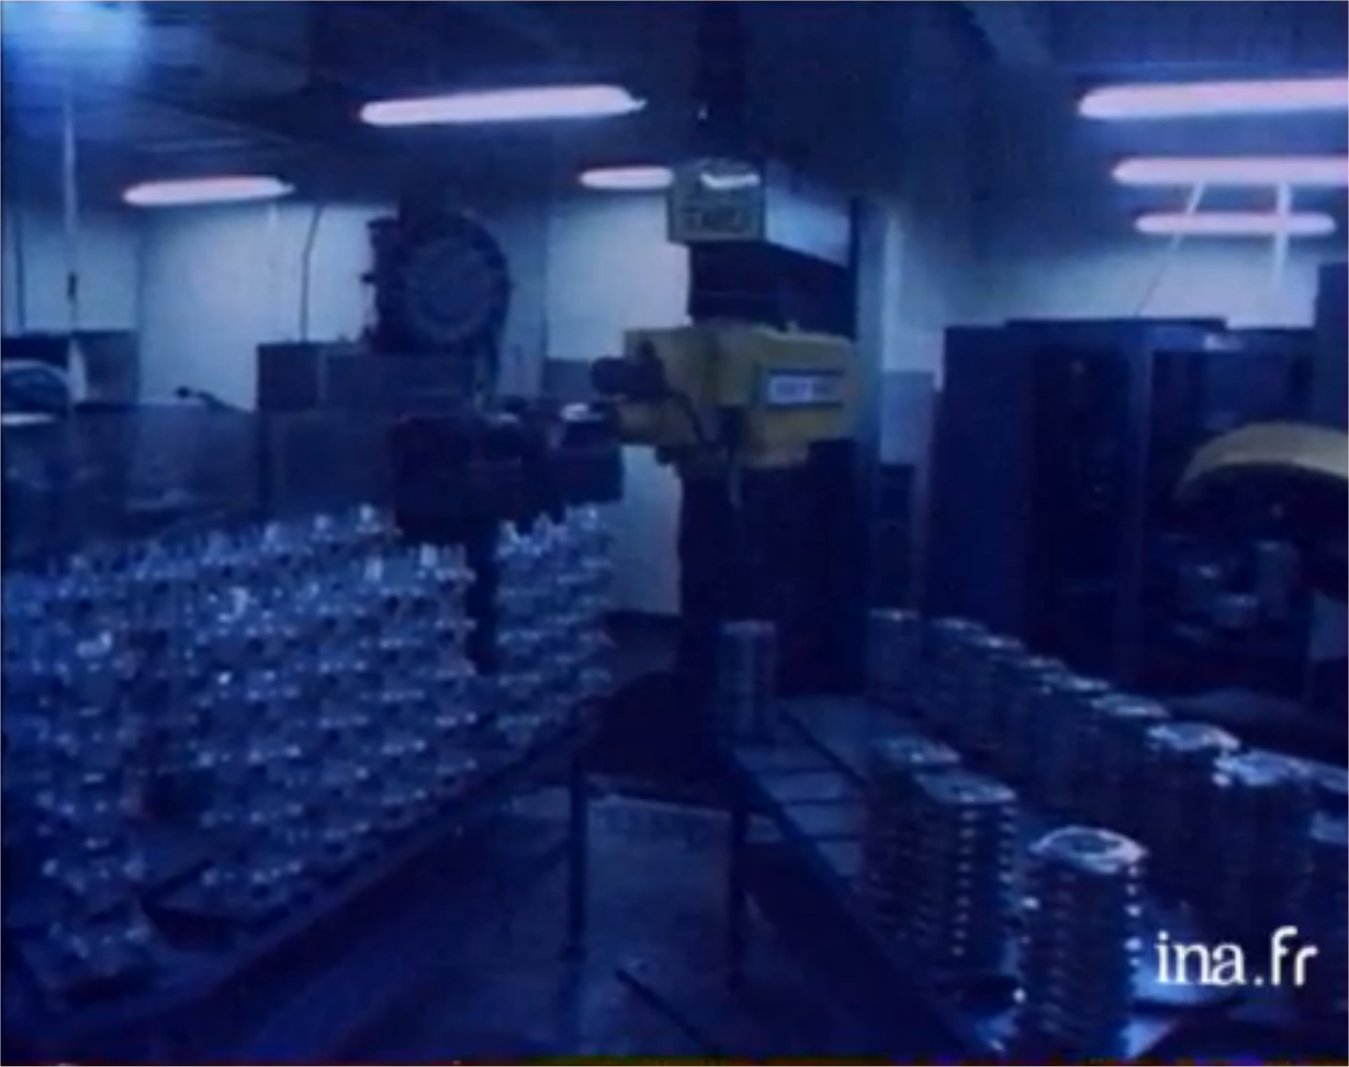 En 1980, l'industrie japonaise utilise 50.000 robots quand il y en a 300 en France. © Ina